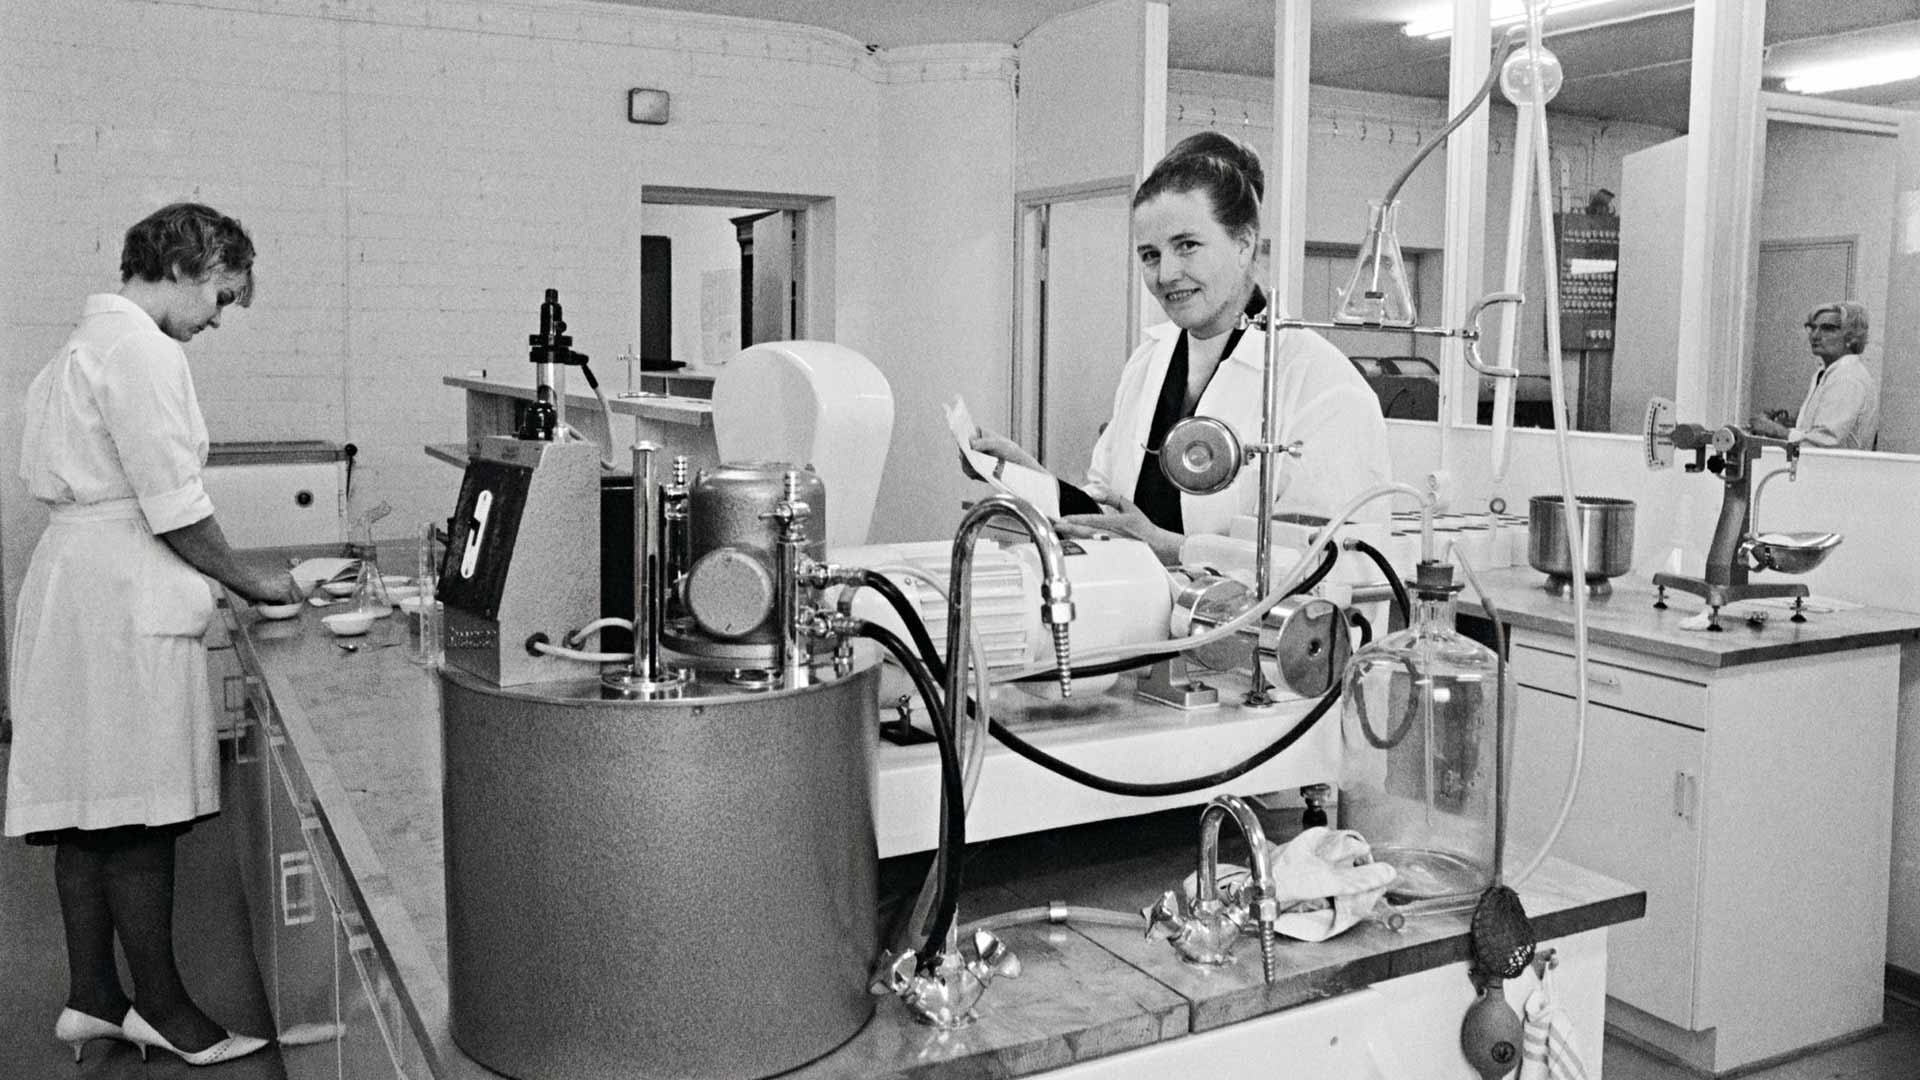 Valtion viljavaraston laboratoriossa analysoitiin marraskuussa 1965 näyte-eriä käsin.